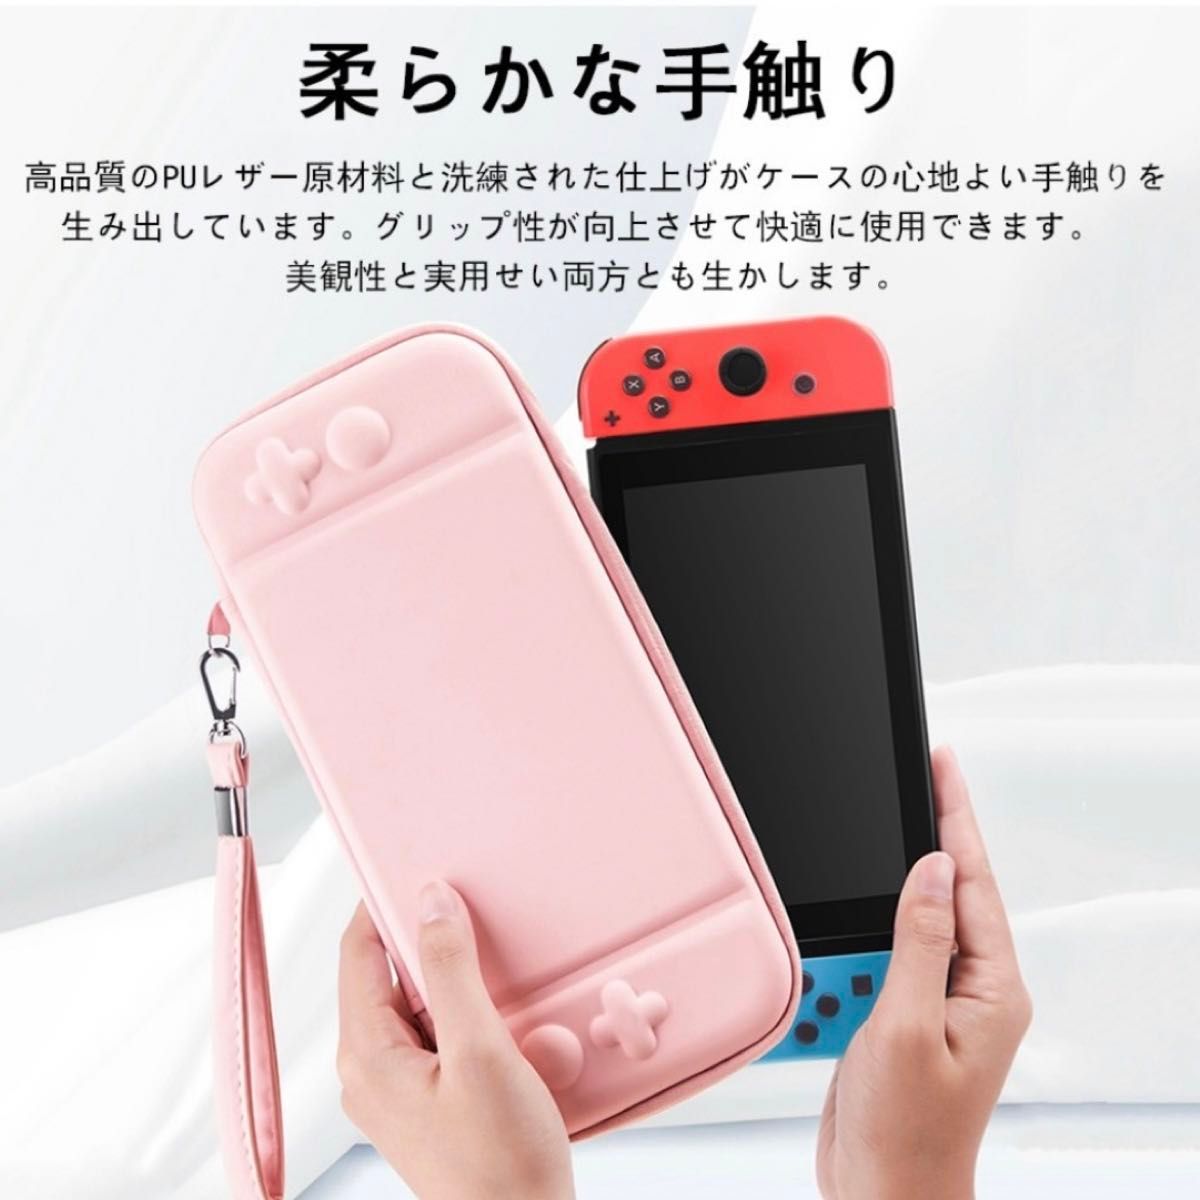  任天堂スイッチ NintendoSwitch 有機EL 収納ケース グラデーションカラー ピンク 水色